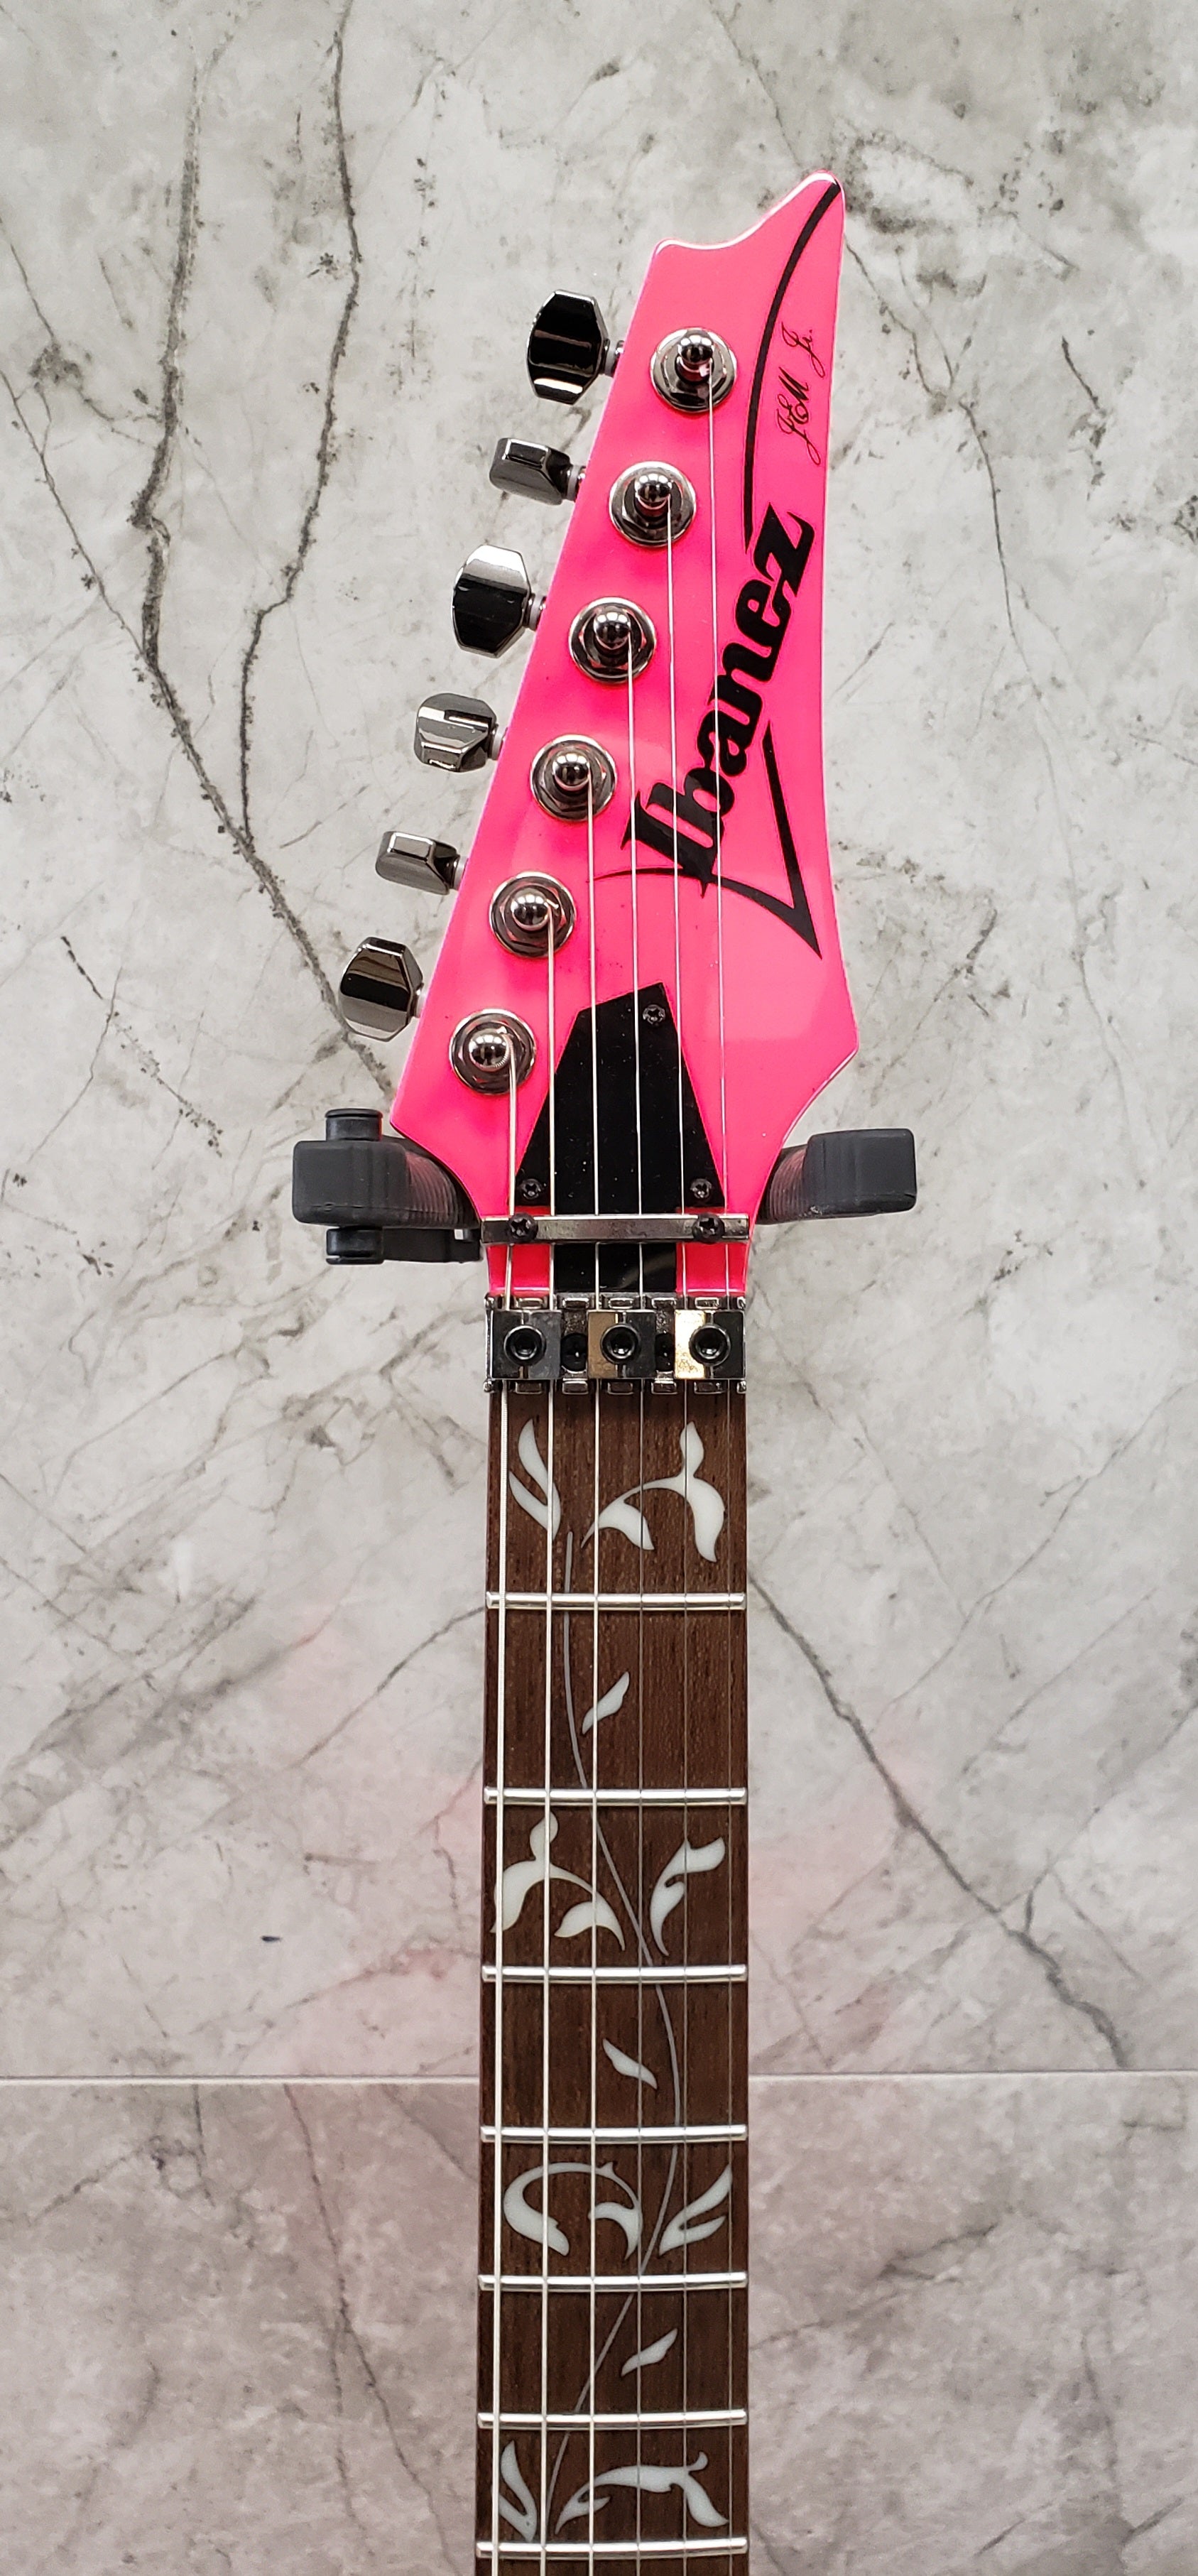 Ibanez JEMJRSPPK JR Steve Vai Pink Electric Guitar